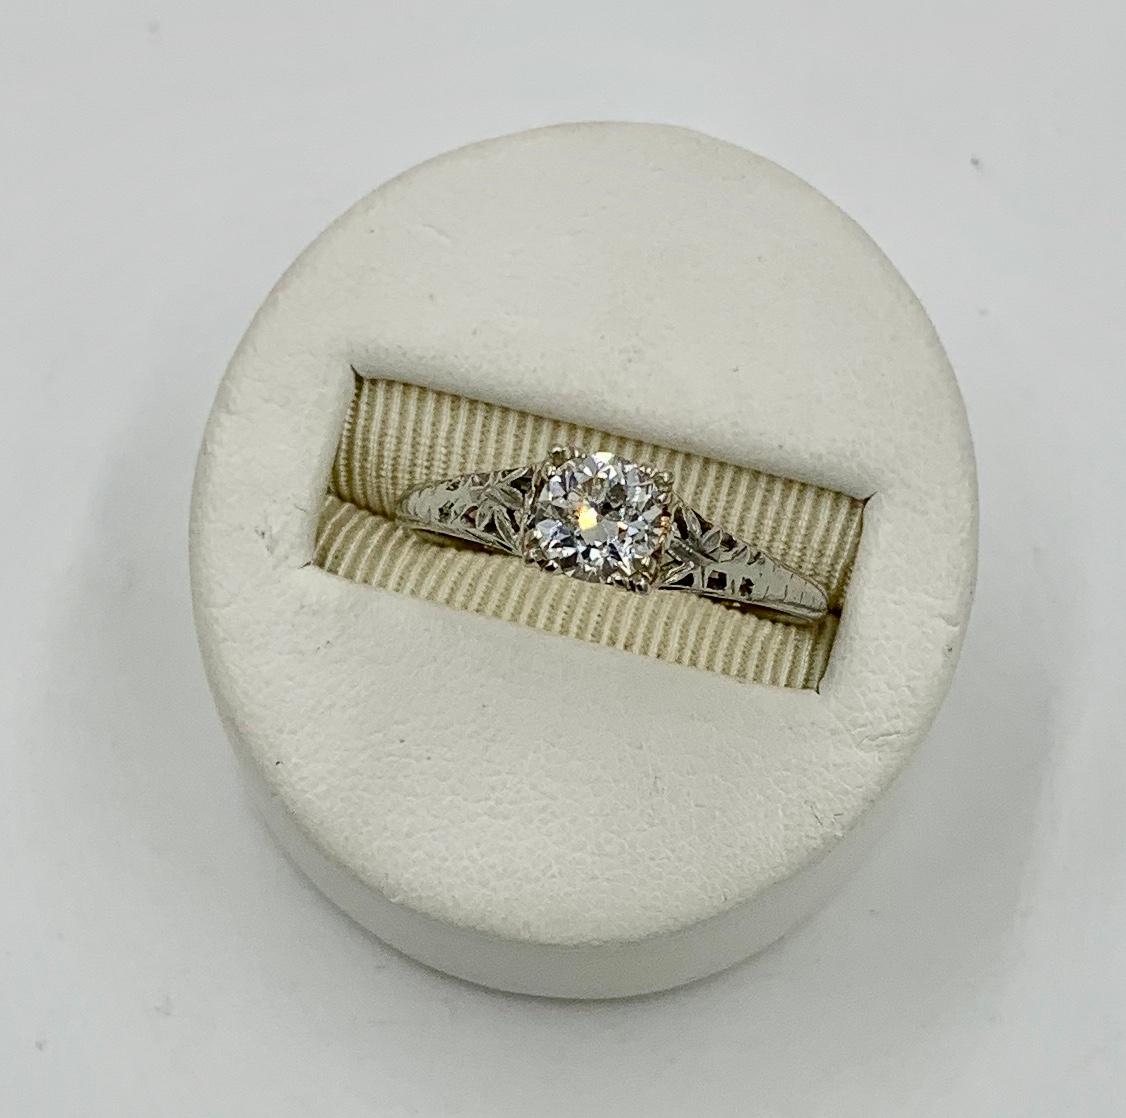 Dies ist eine atemberaubende antike Art Deco - Edwardian Diamond Ring mit einem spektakulären 0,65 Karat Old European Cut Diamond in einem schönen offenen Arbeit Einstellung in 18 Karat Weißgold gesetzt.  Der Old European Cut Diamond ist absolut